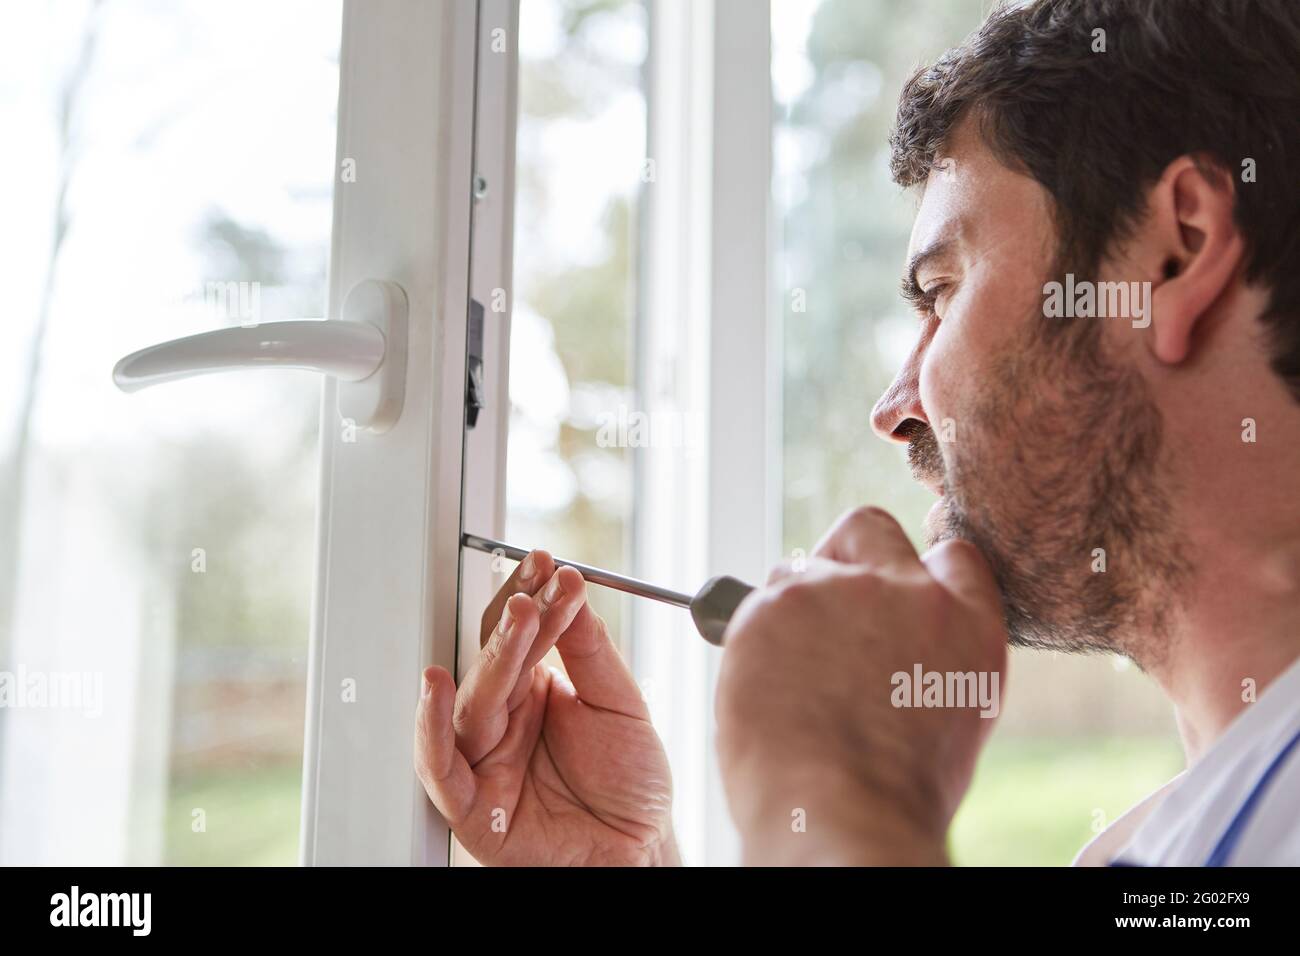 Los montadores de ventanas o los ajustadores de ventanas ajustan y ajustan las ventanas en un apartamento Foto de stock